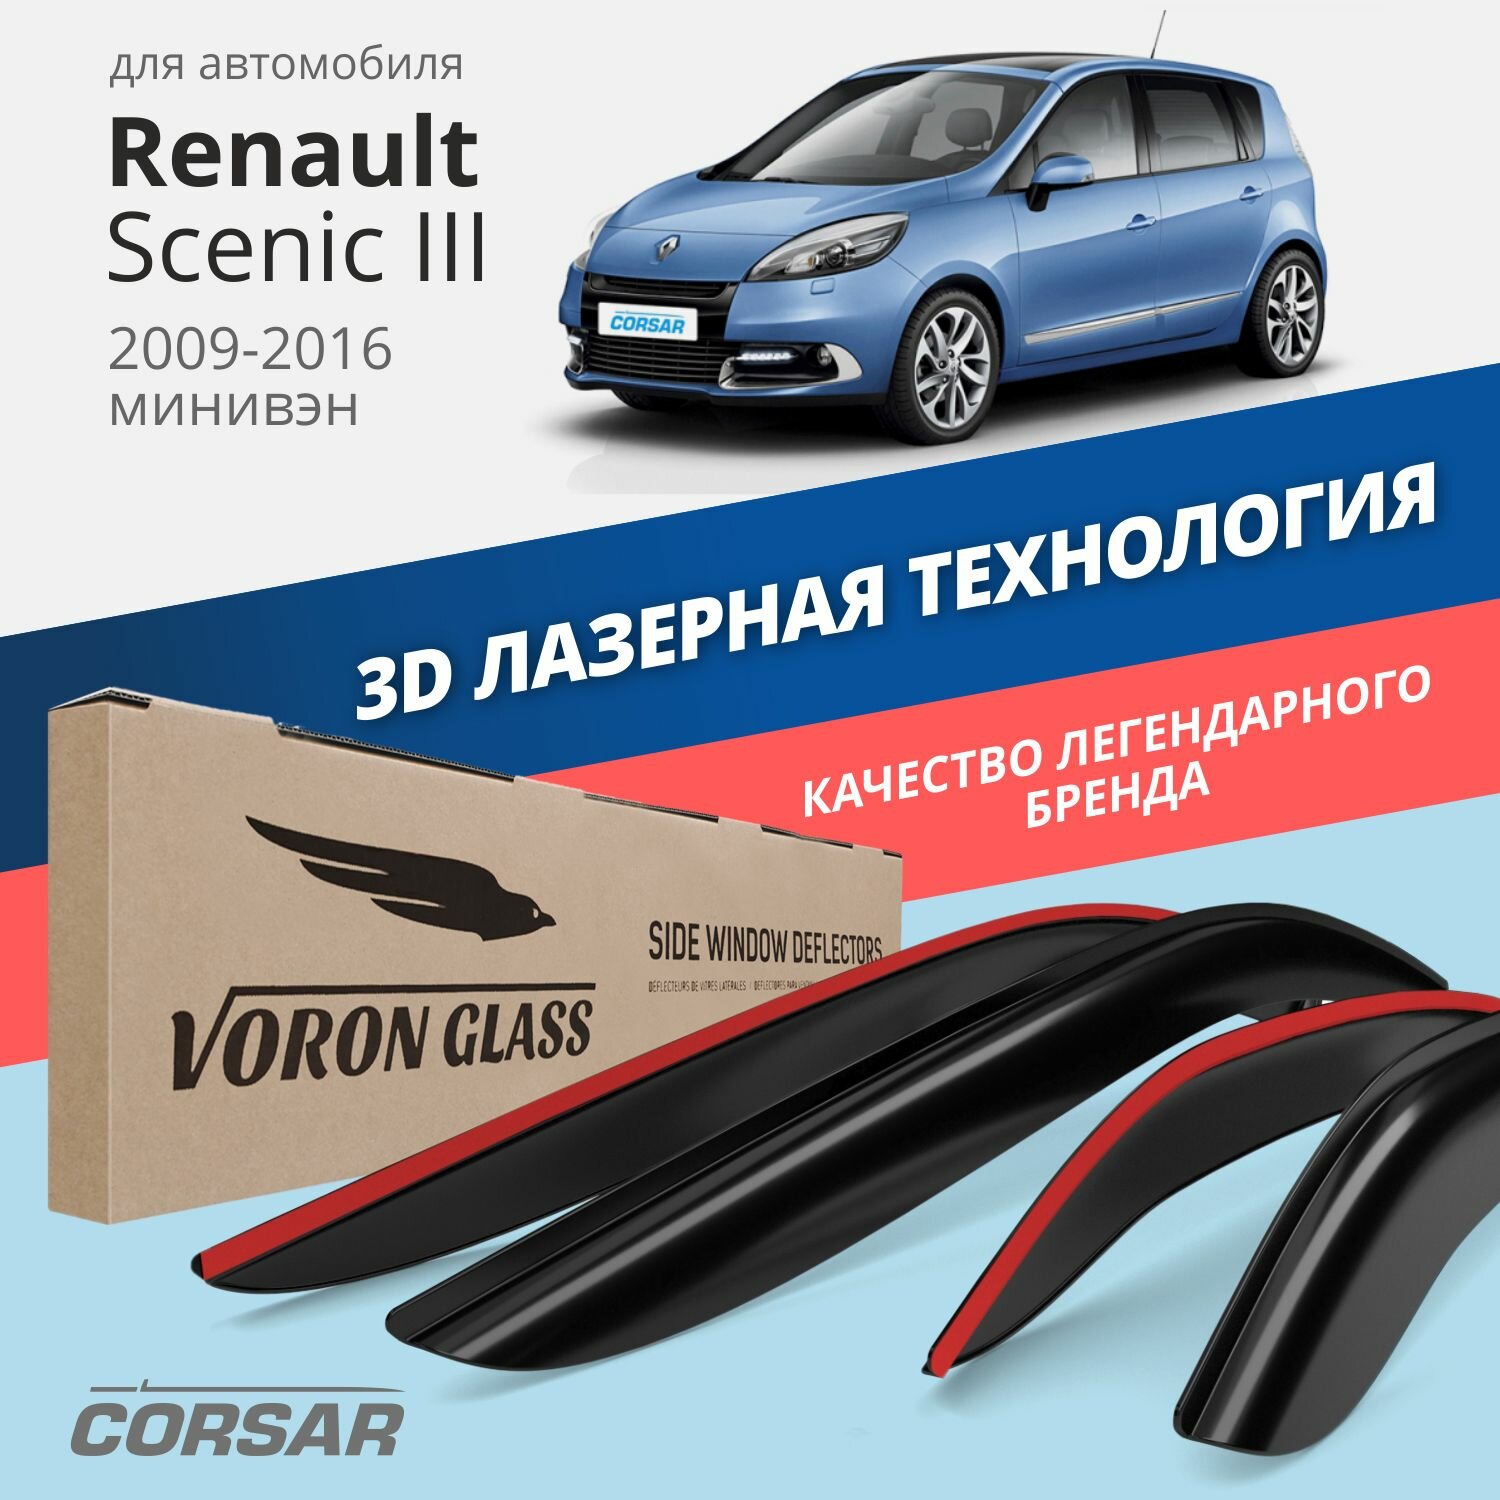 Дефлекторы окон Voron Glass серия Corsar для Renault Scenic III 2009-2016 накладные 4 шт.